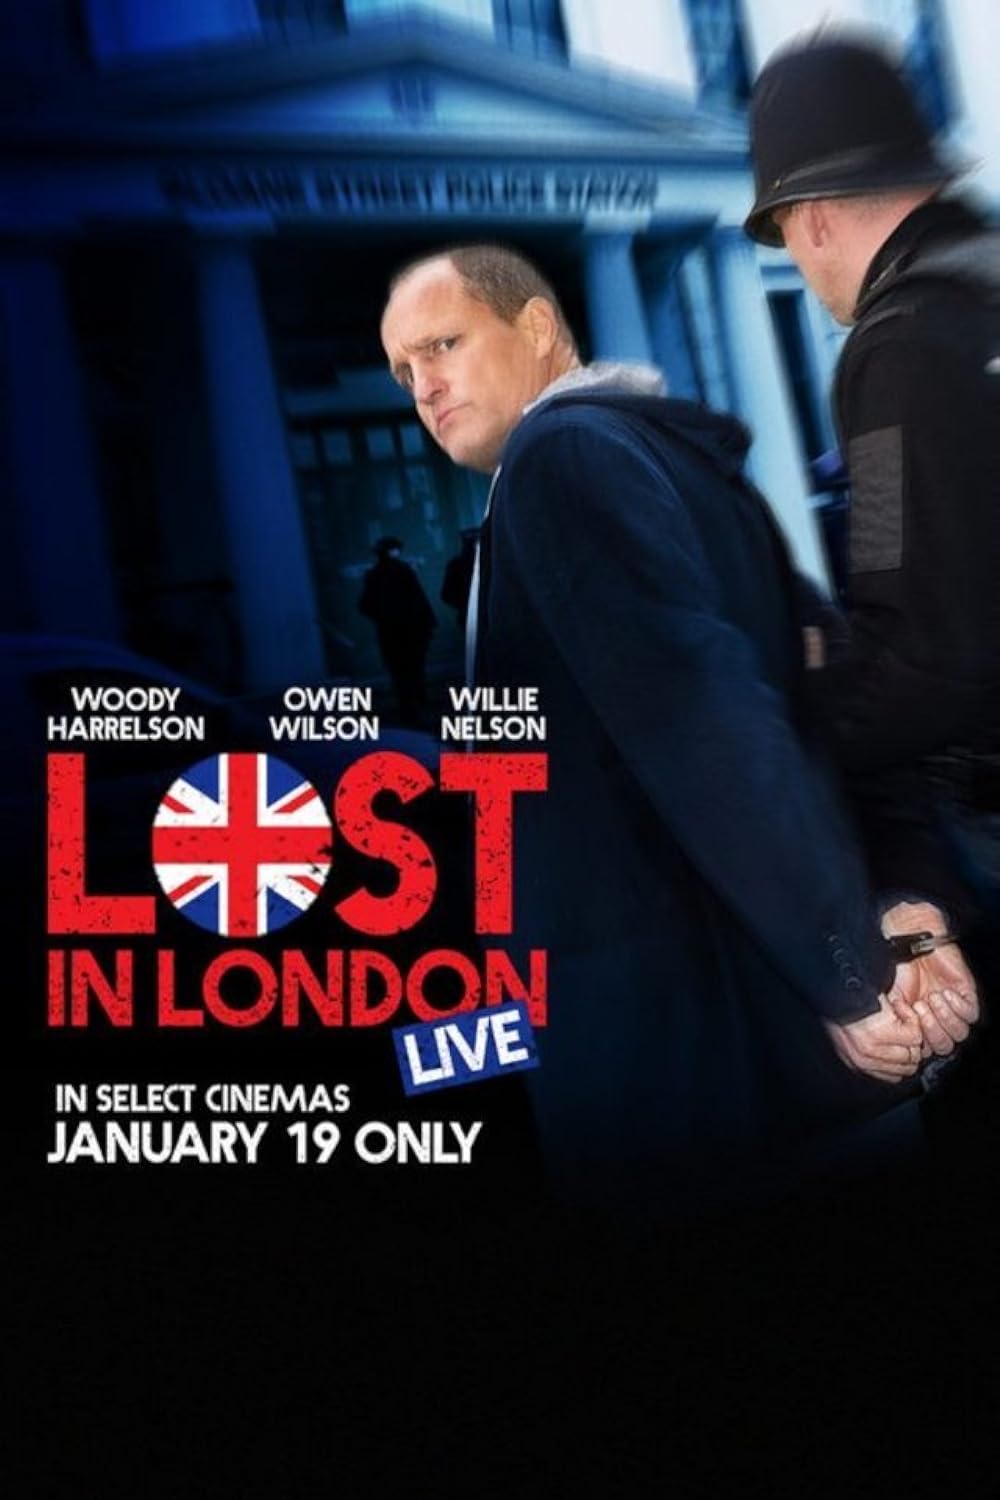 Lost in London (2017) V1 192Kbps 23.976Fps 48Khz 2.0Ch DigitalTV Turkish Audio TAC